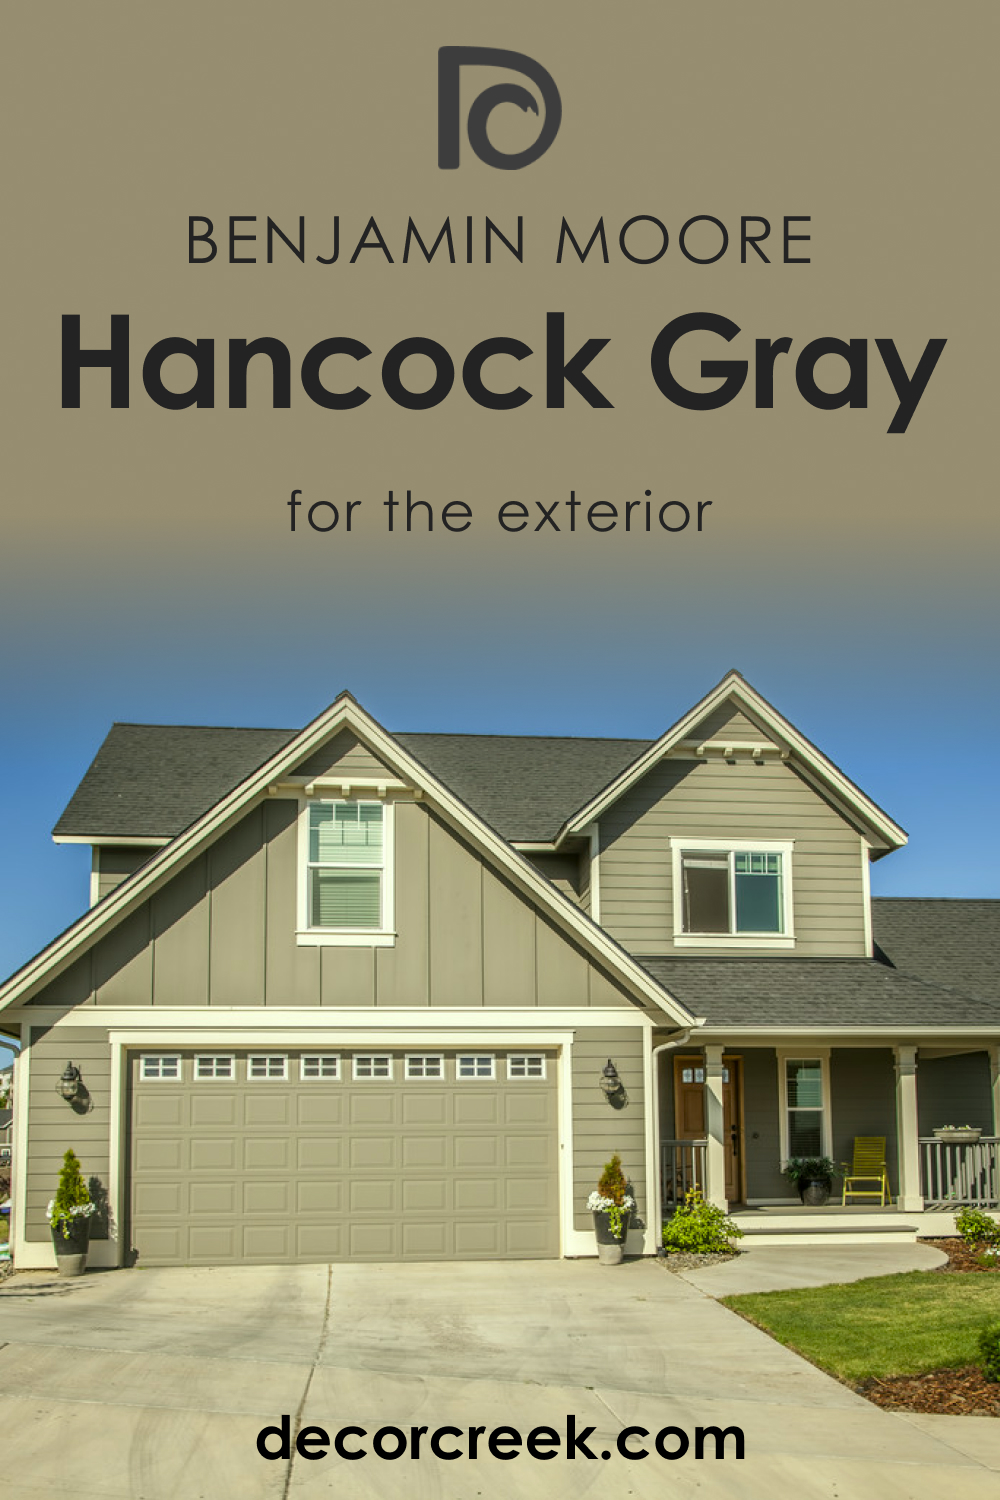 Hancock Gray HC-97 for an Exterio